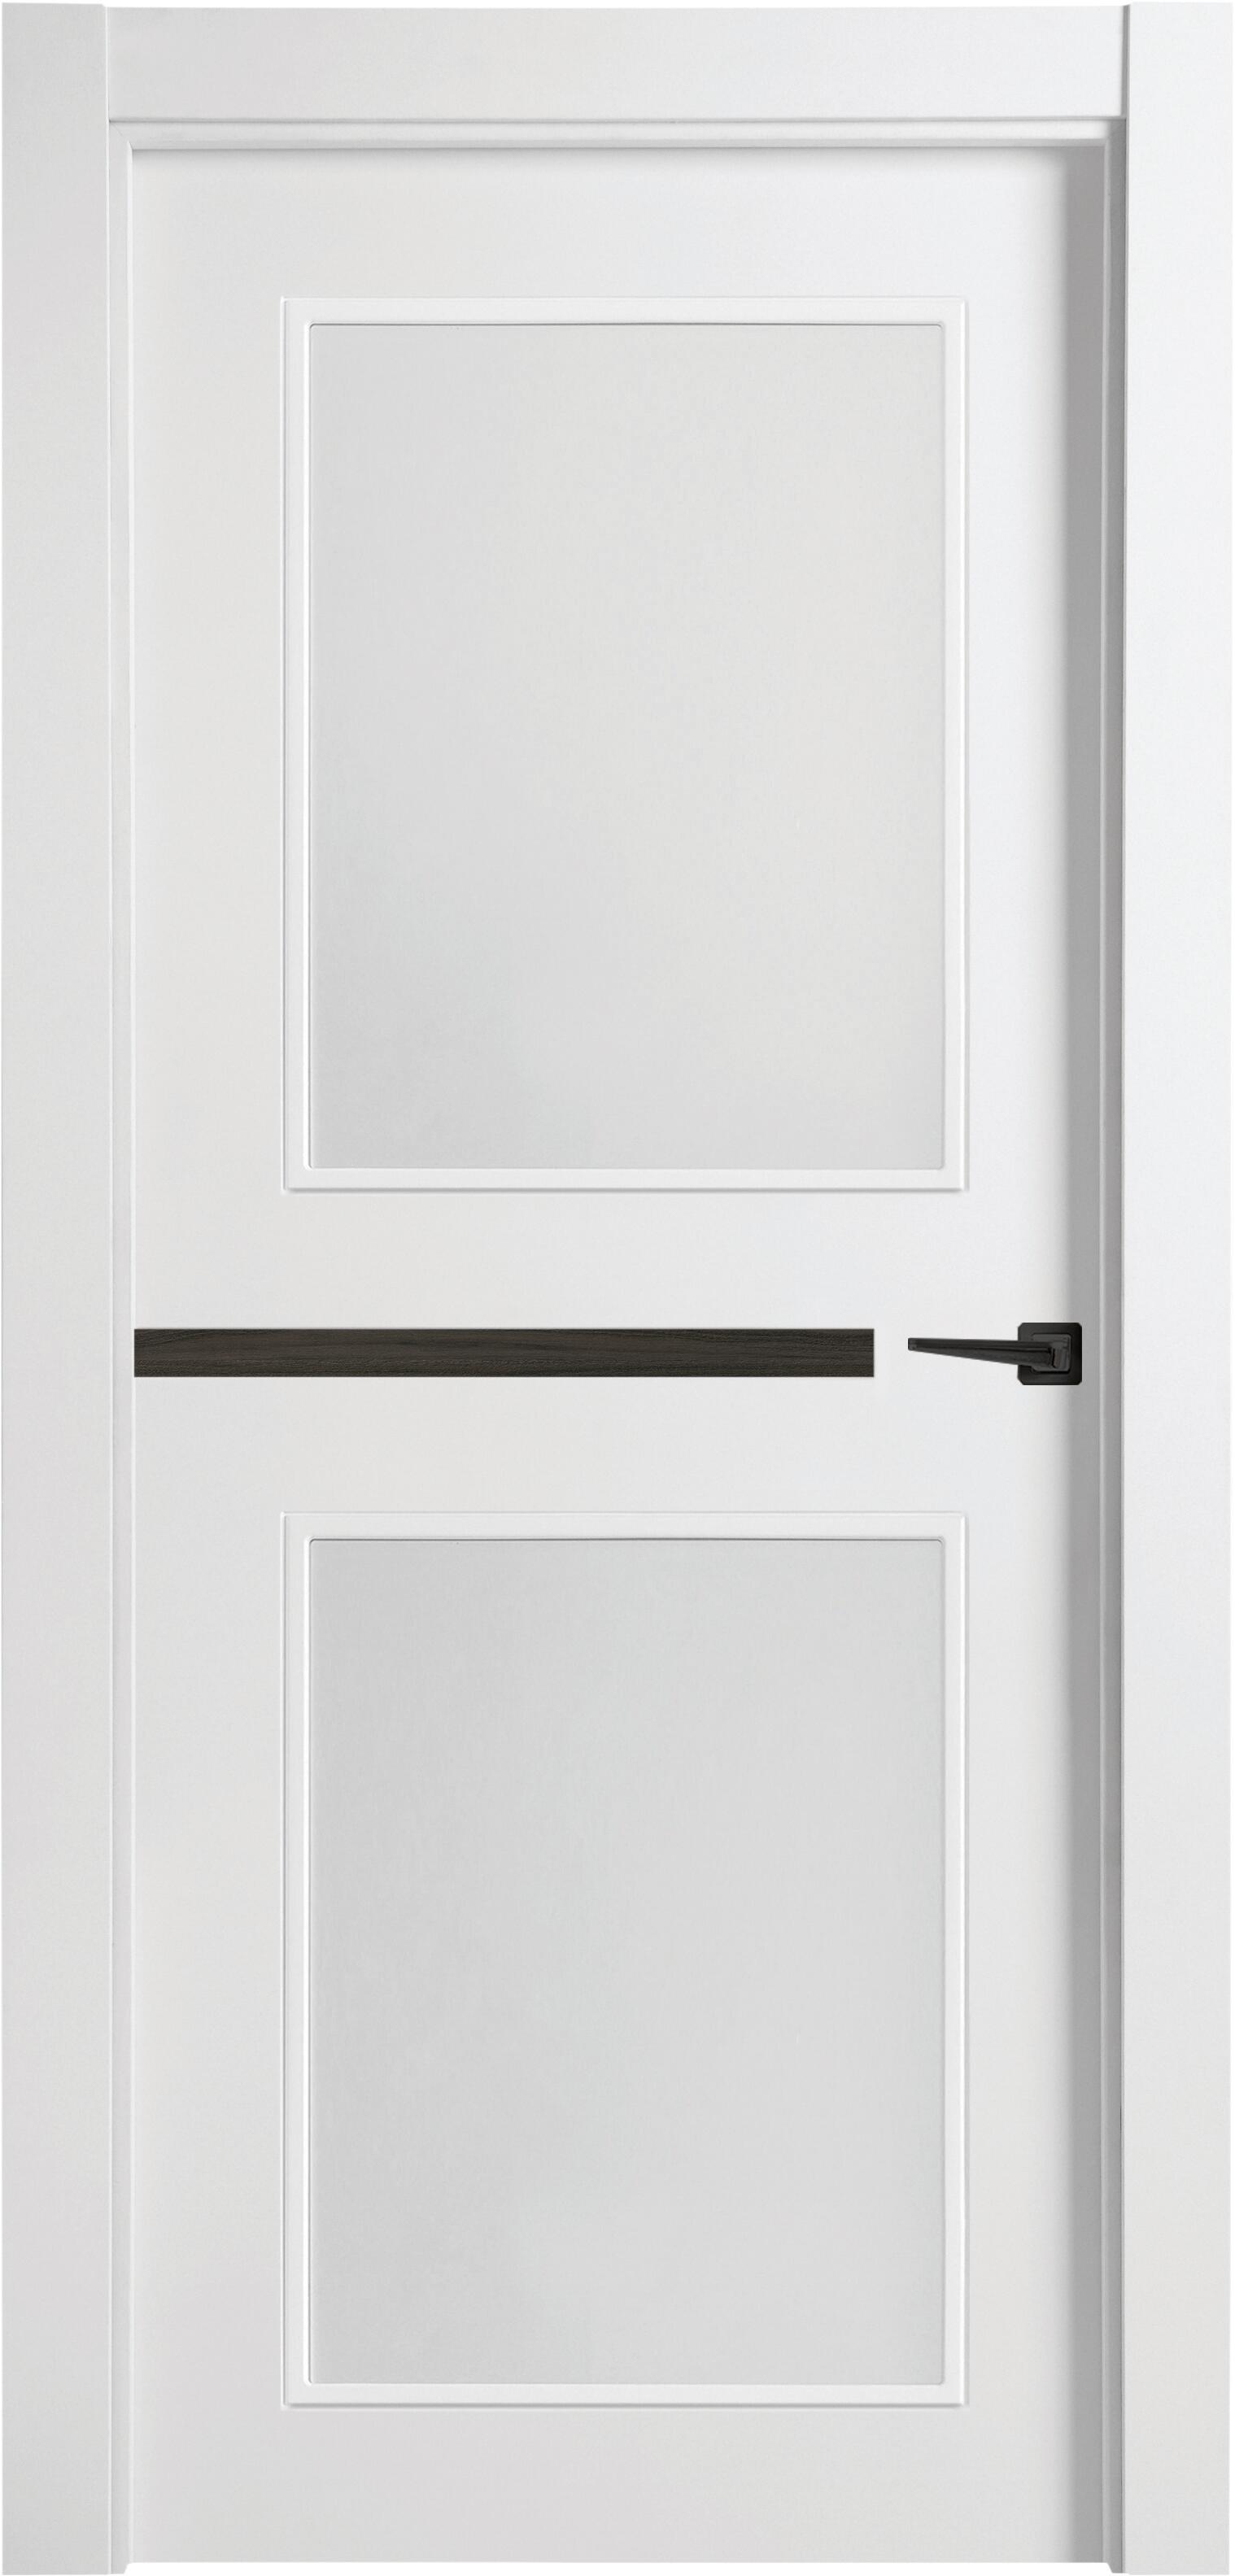 Puerta denver carbón blanco apertura izquierda con cristal 11x72,5 cm